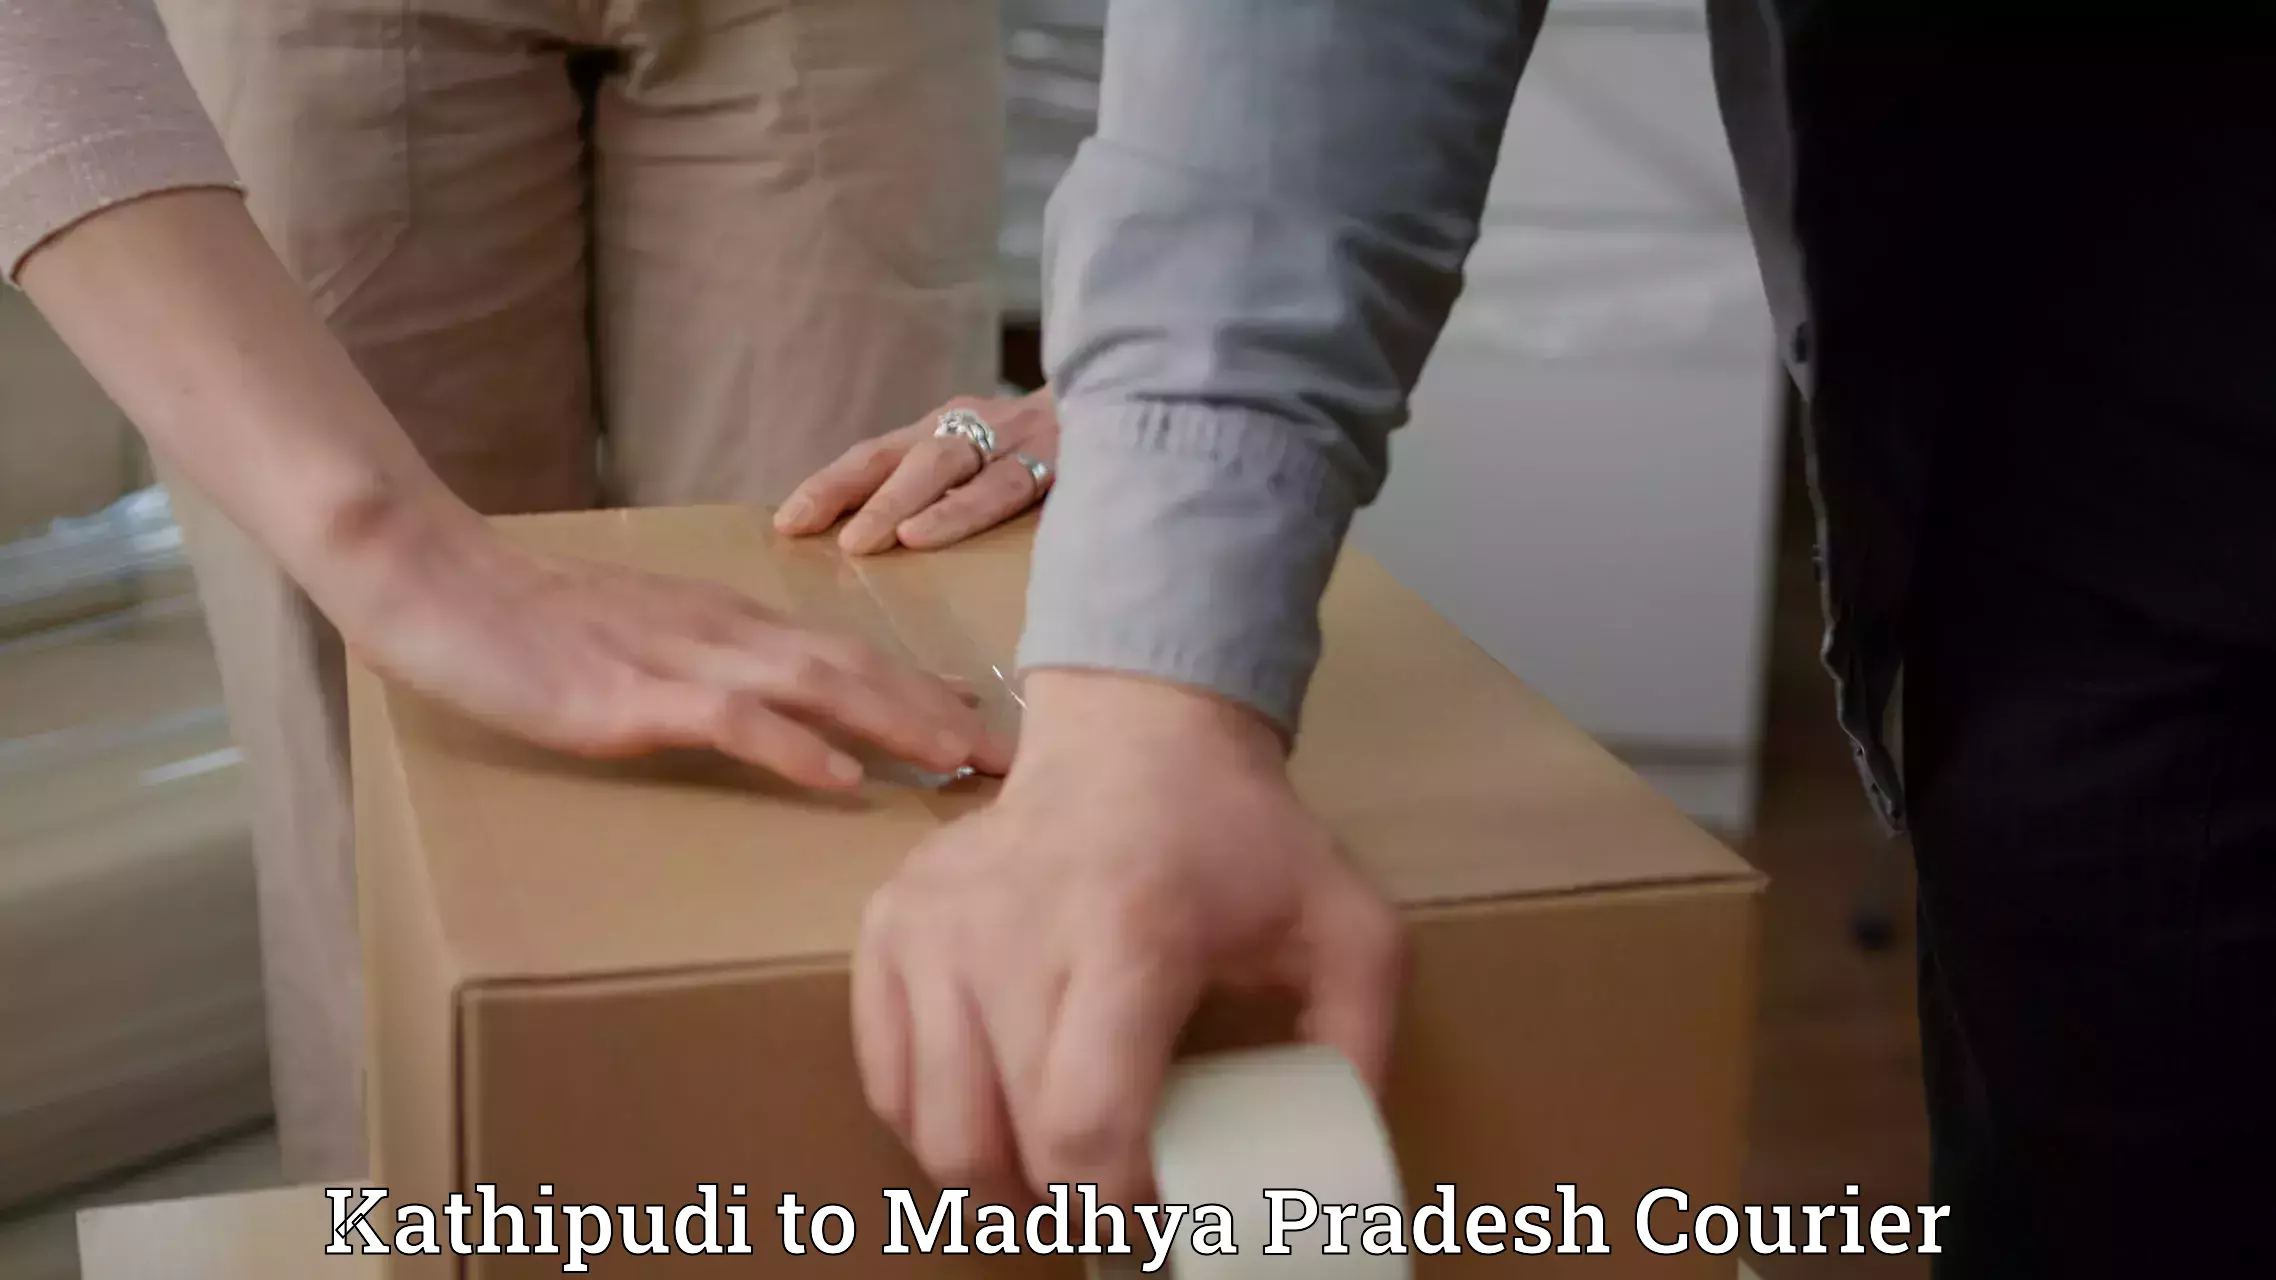 Affordable parcel service Kathipudi to Manawar